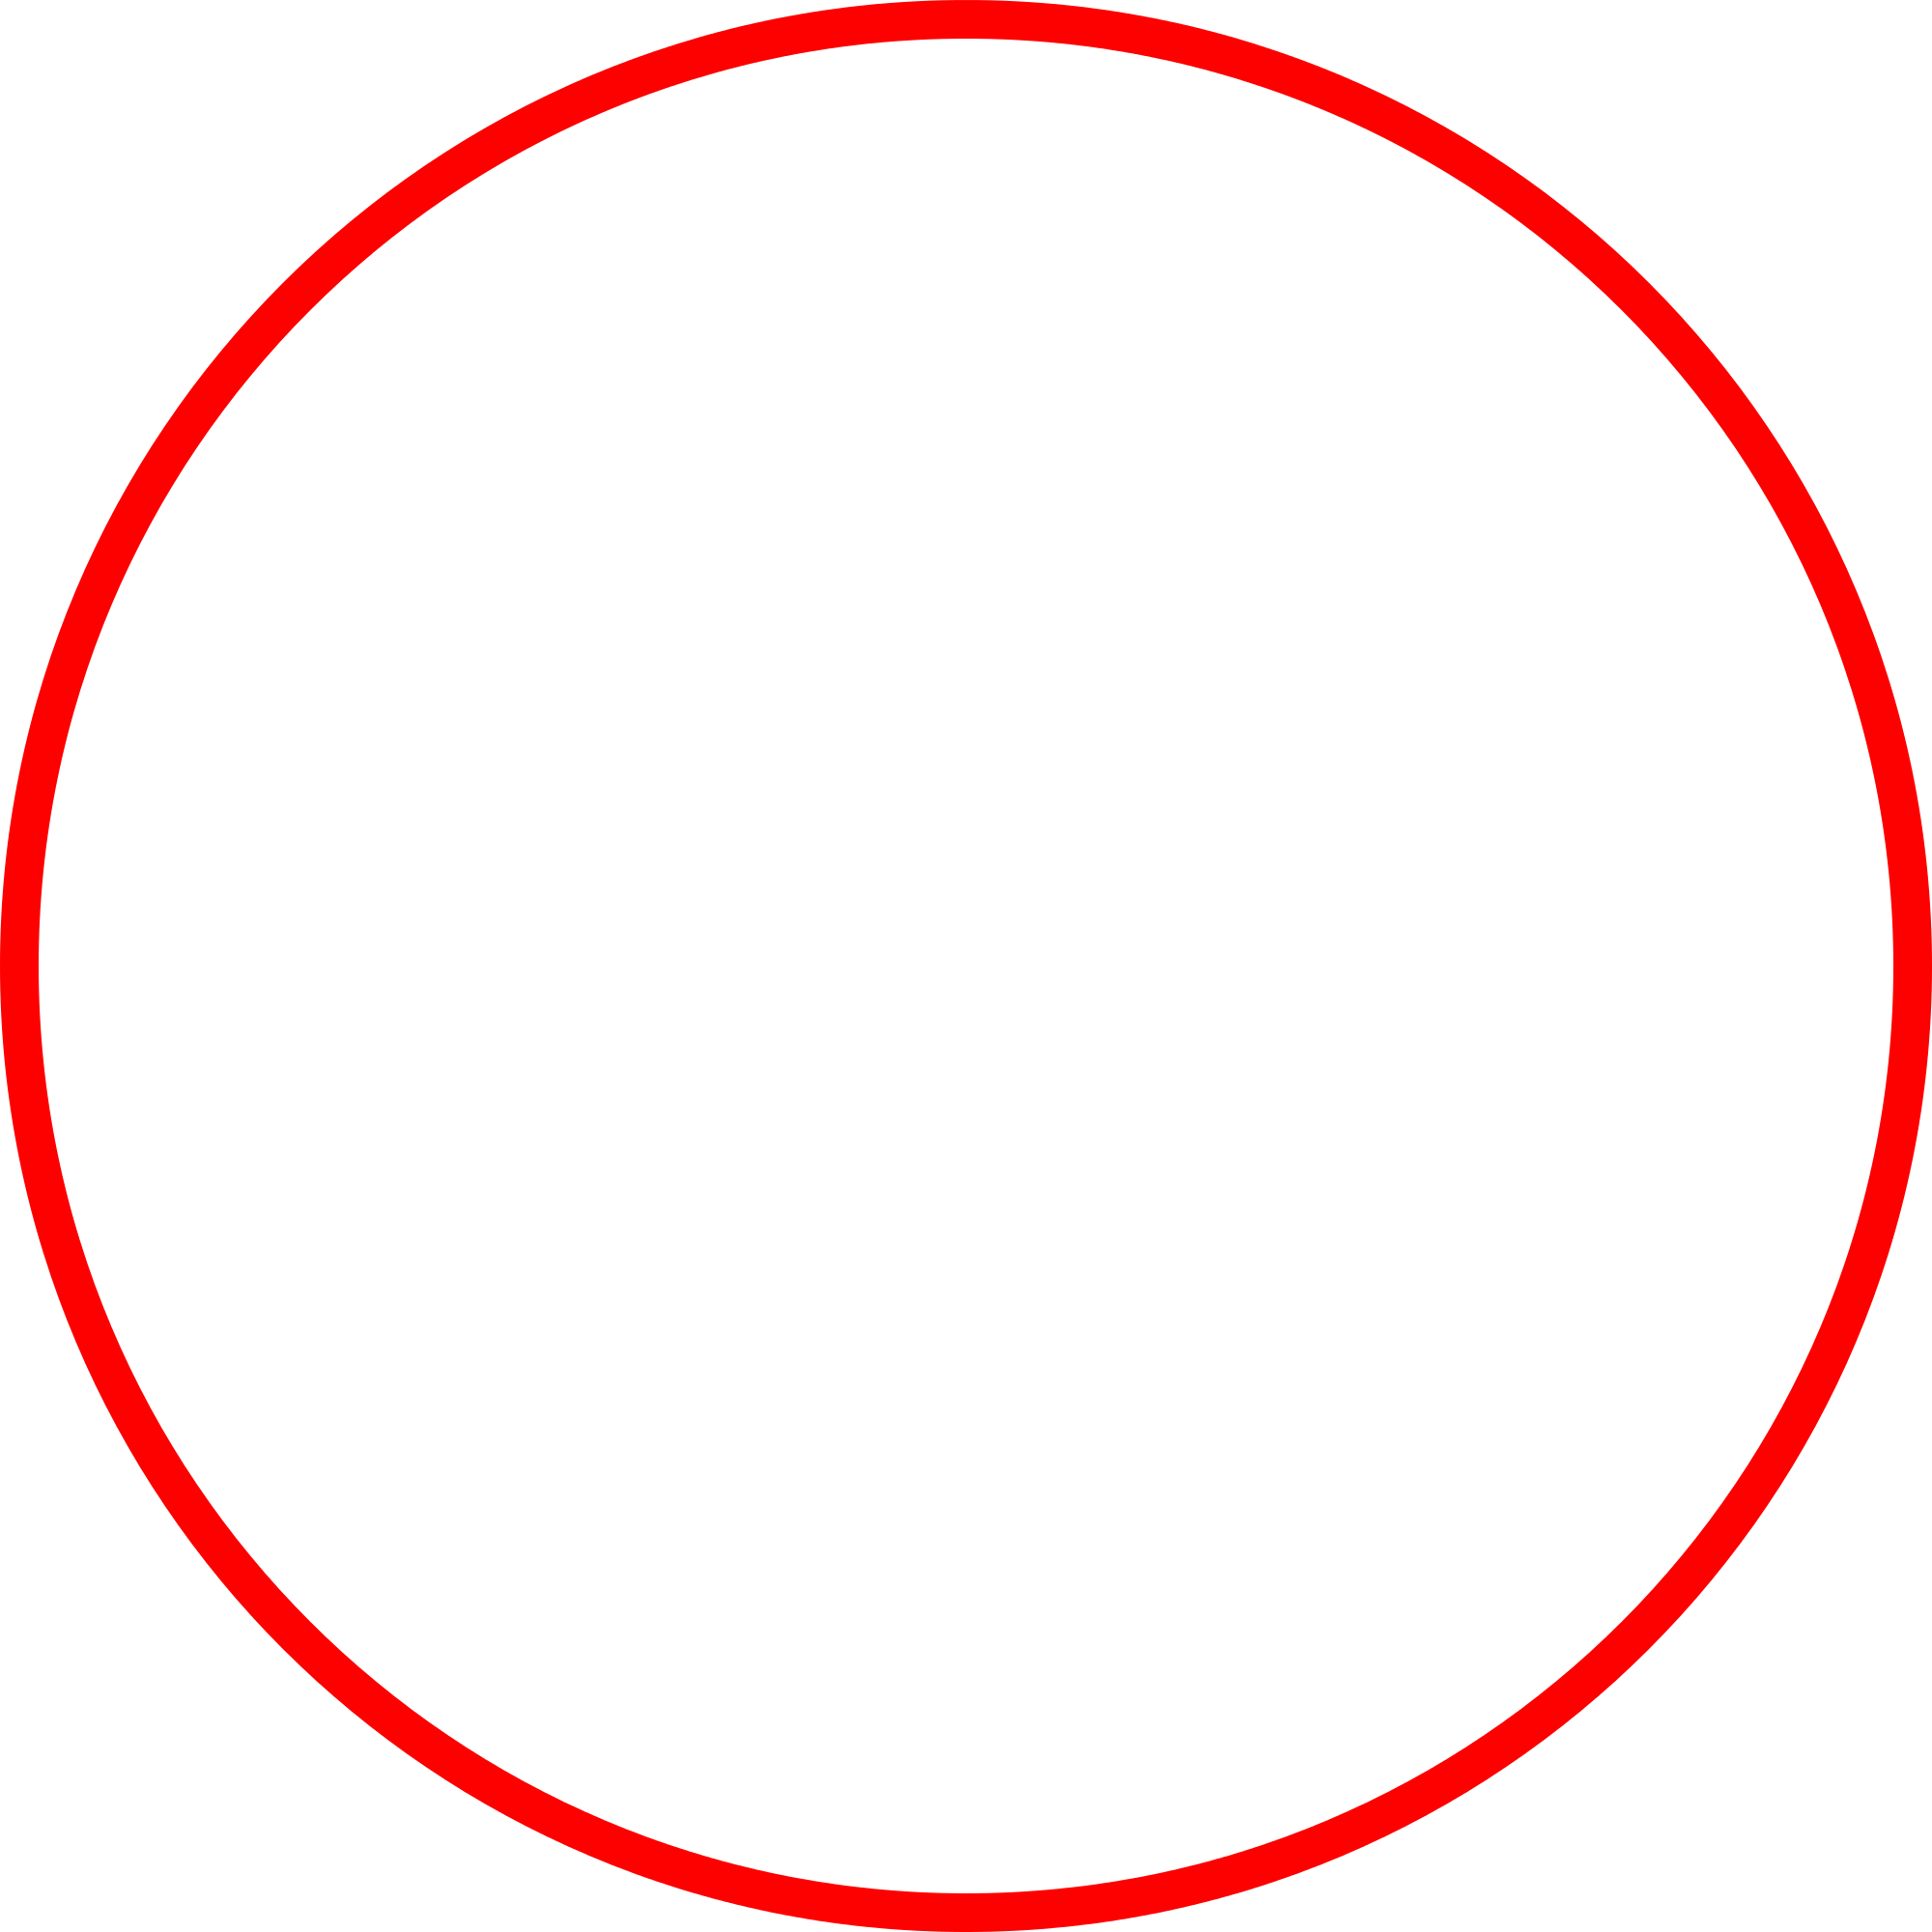 Circle called. Круг. Прозрачный круг. Круг без фона. Круг на прозрачном фоне.